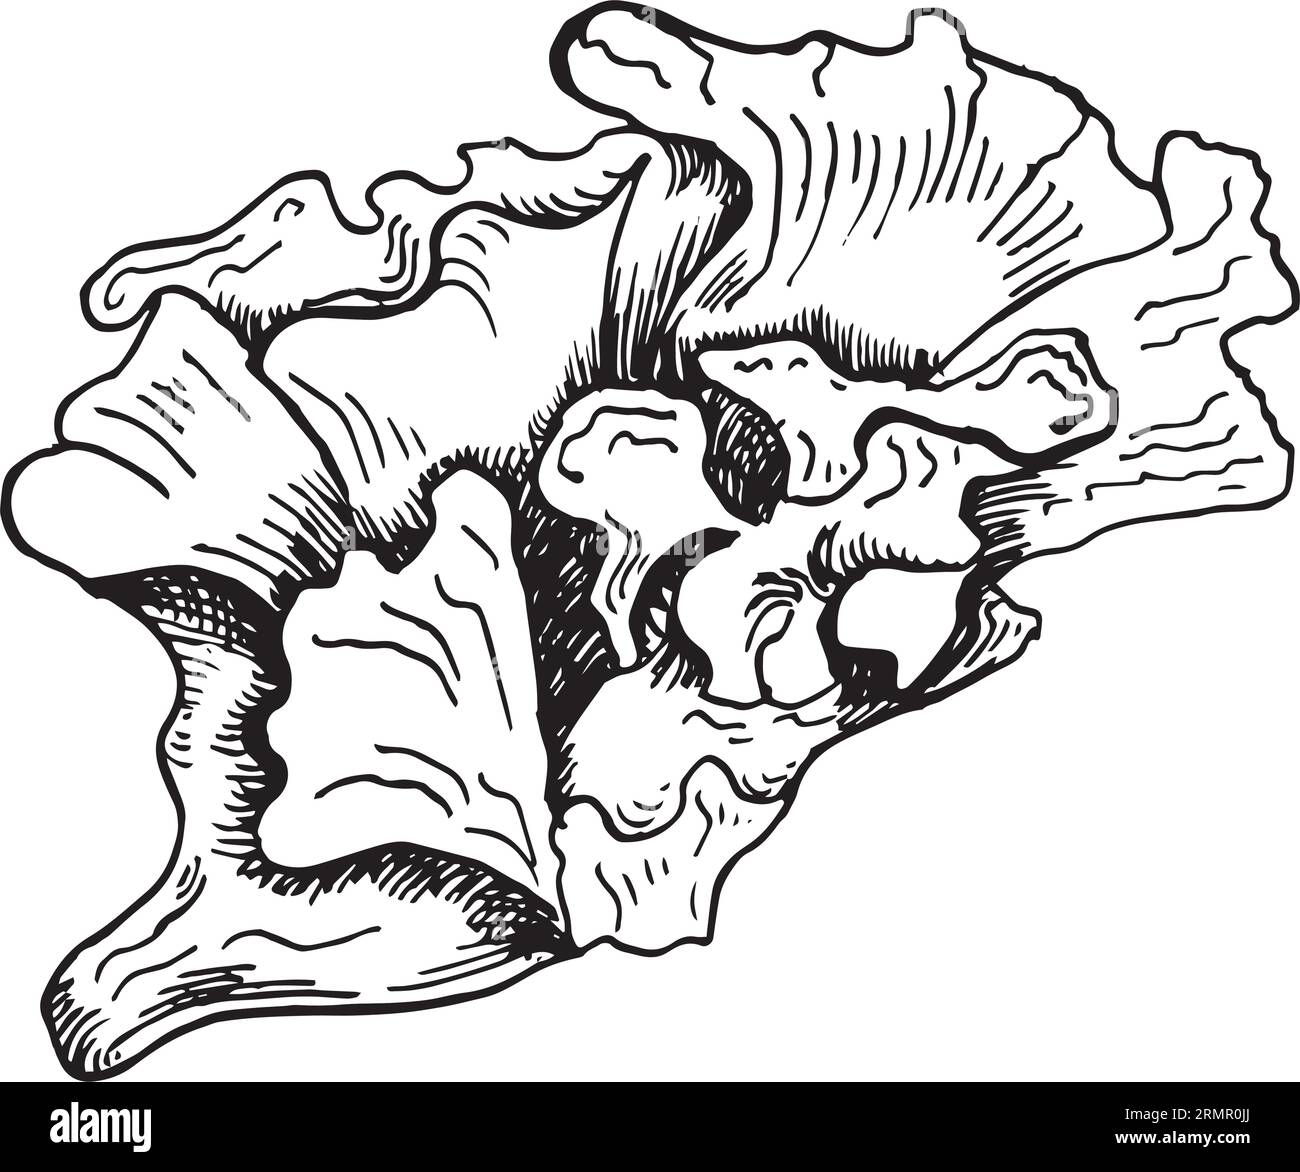 Illustrazione disegnata a mano con inchiostro di piante vettoriali di mare isolata su sfondo bianco. Ulva, insalata di mare, utile linea bianca nera con alghe. Elemento di progettazione per Illustrazione Vettoriale